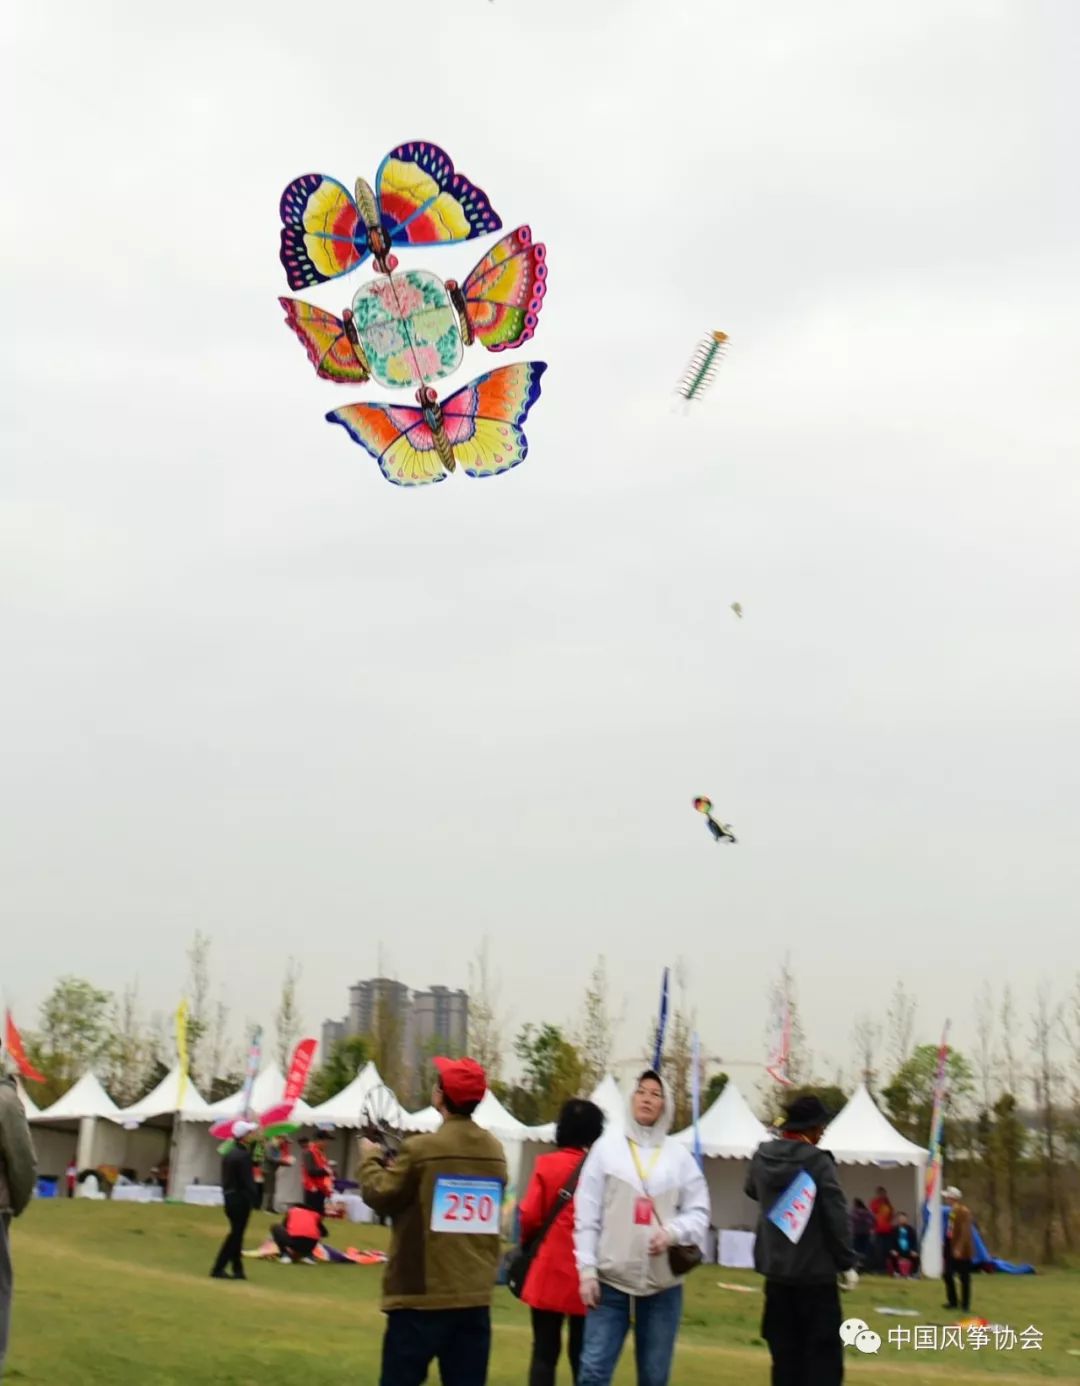 2019年国际风筝邀请赛暨全国传统风筝锦标赛在四川省崇州市羊马嘉裕